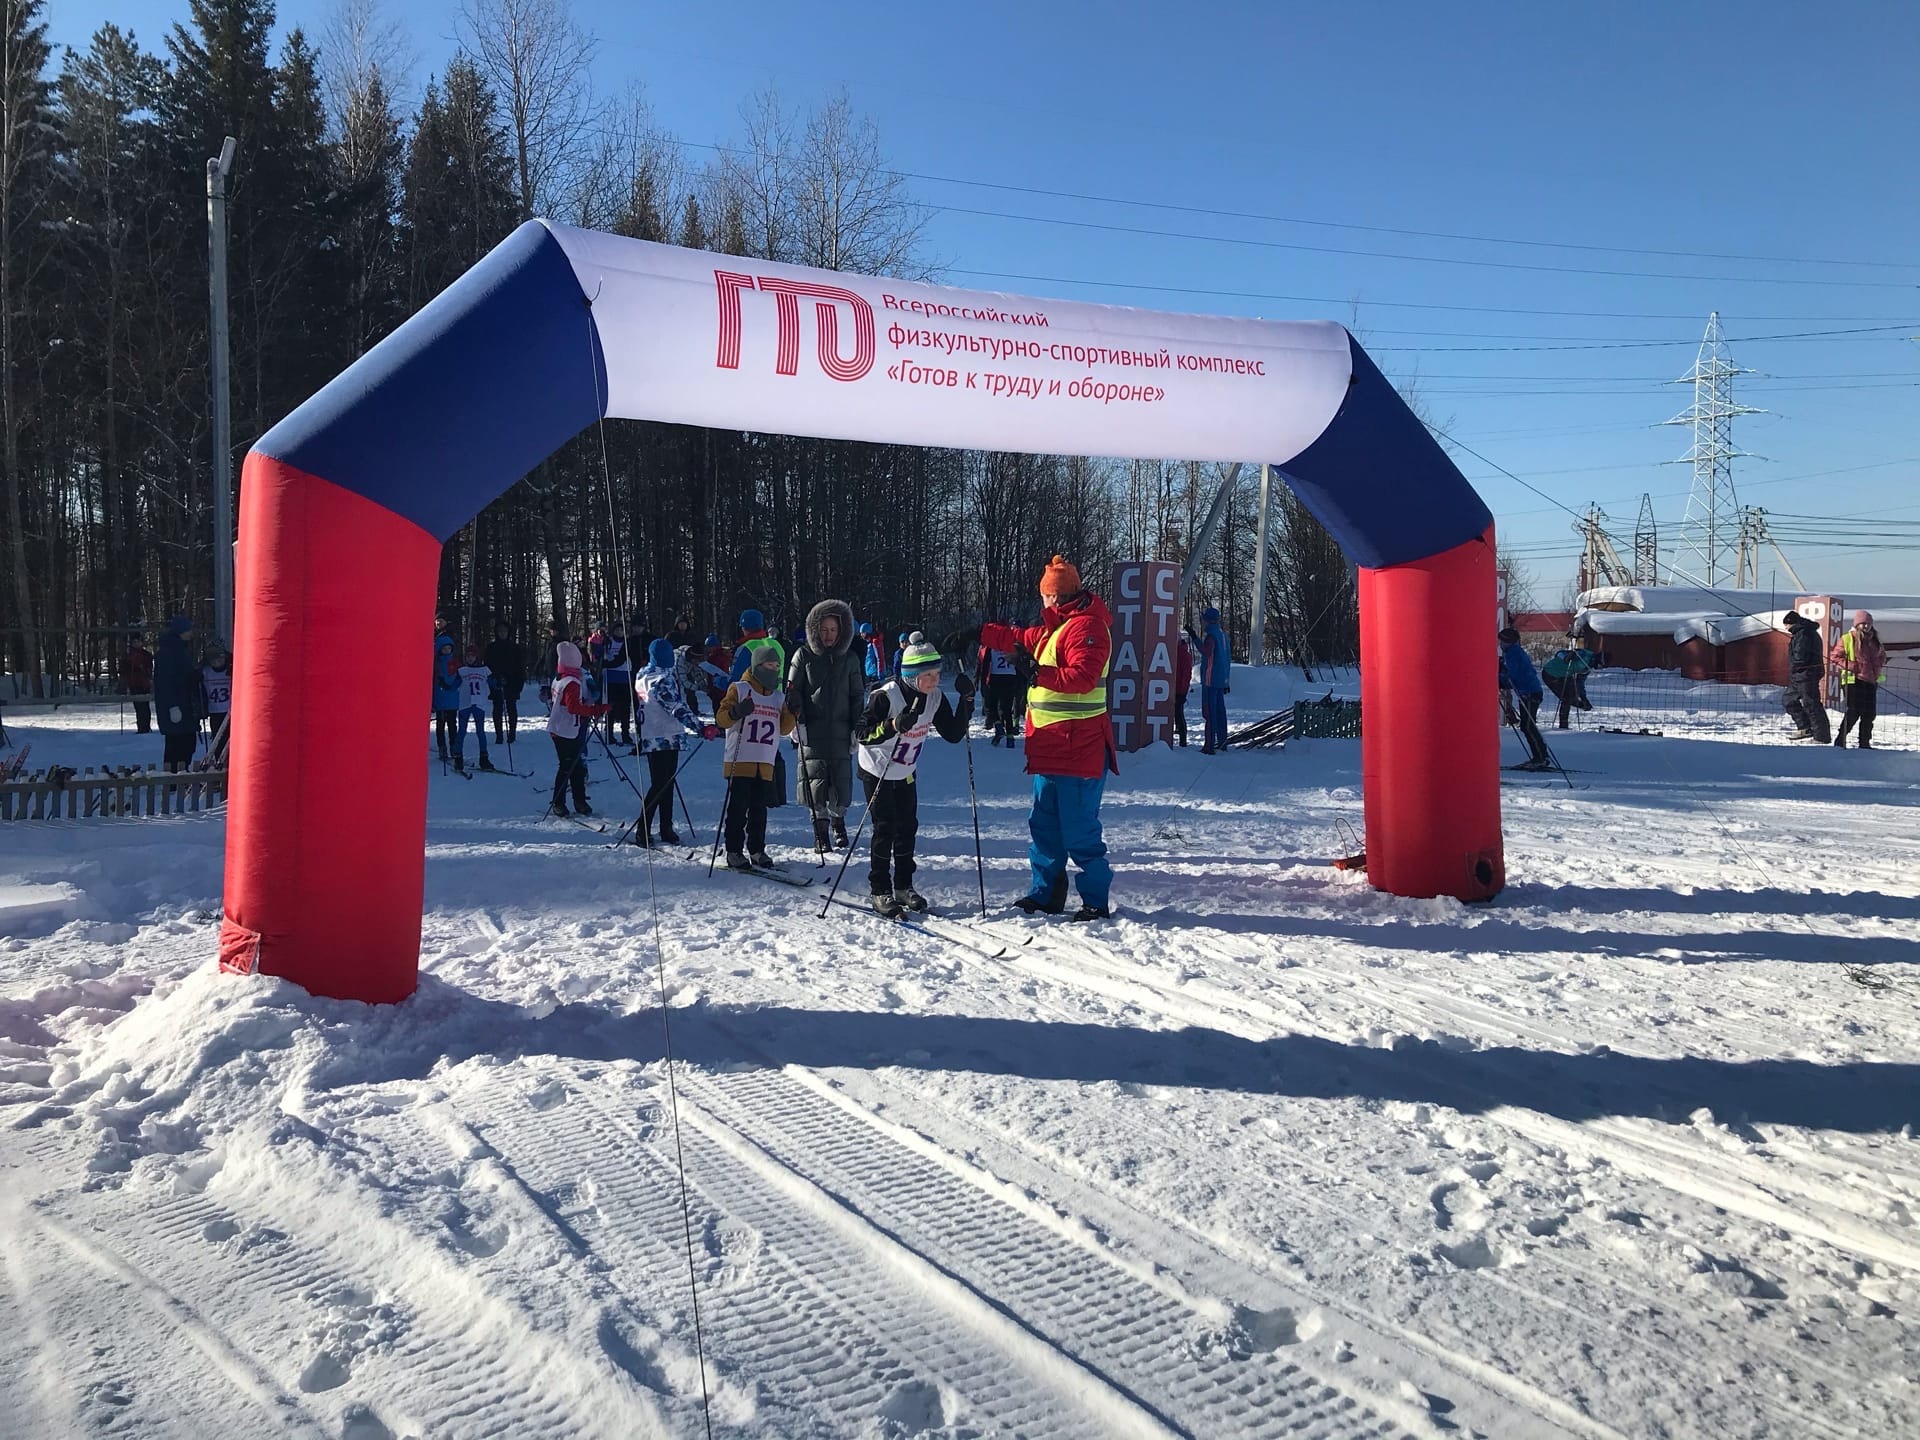 27 - 28 февраля 2021 г. на лыжной базе «Калиец» ПАО «Уралкалий» состоялось физкультурное мероприятиепо лыжным гонкам памяти Андрея Приданникова.